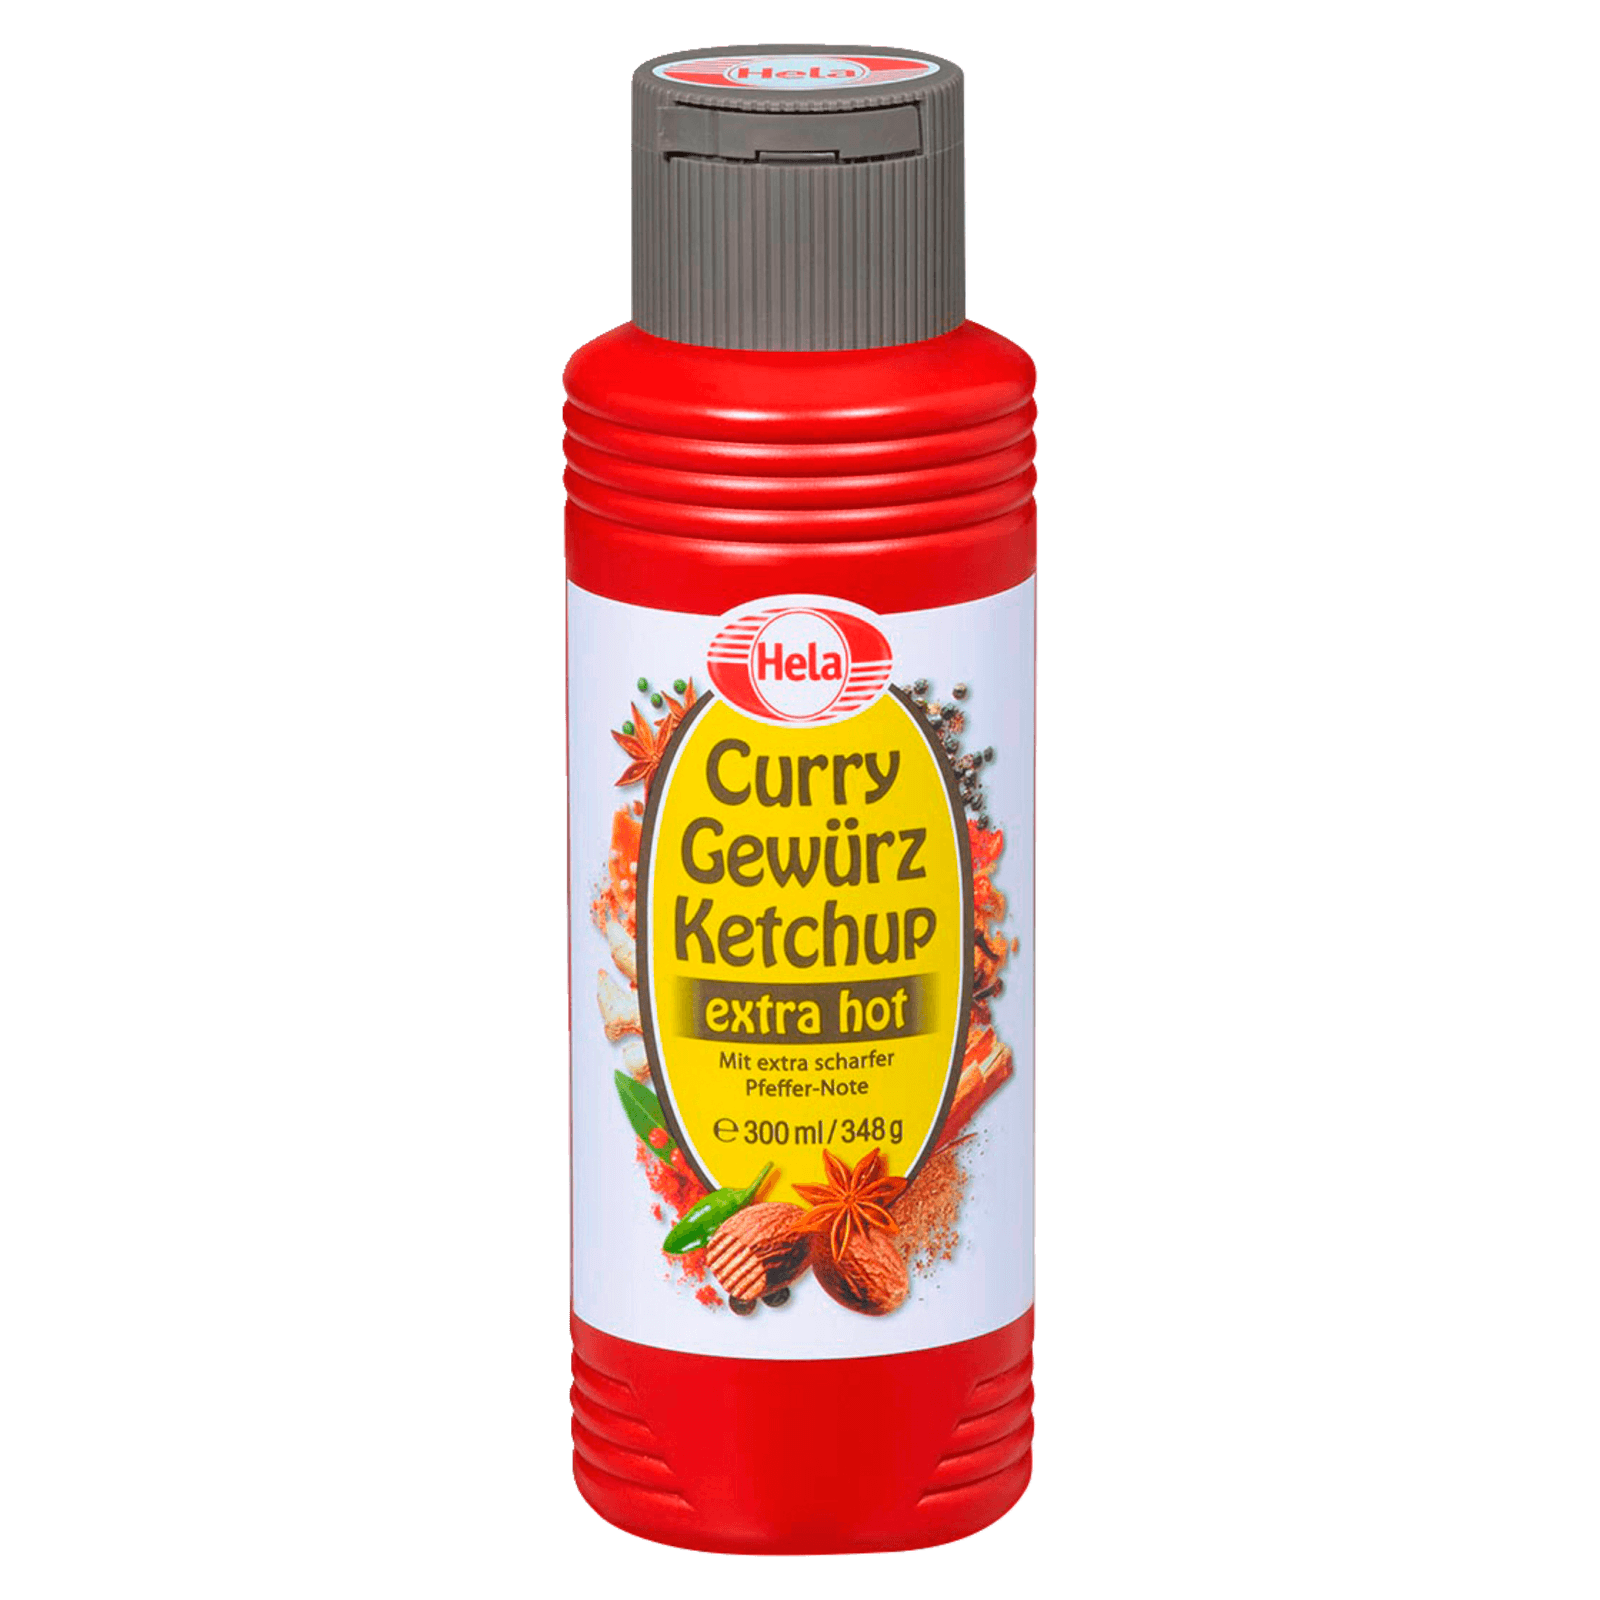 Hela Curry Gewürz Ketchup extra hot 300 ml bei REWE online bestellen!